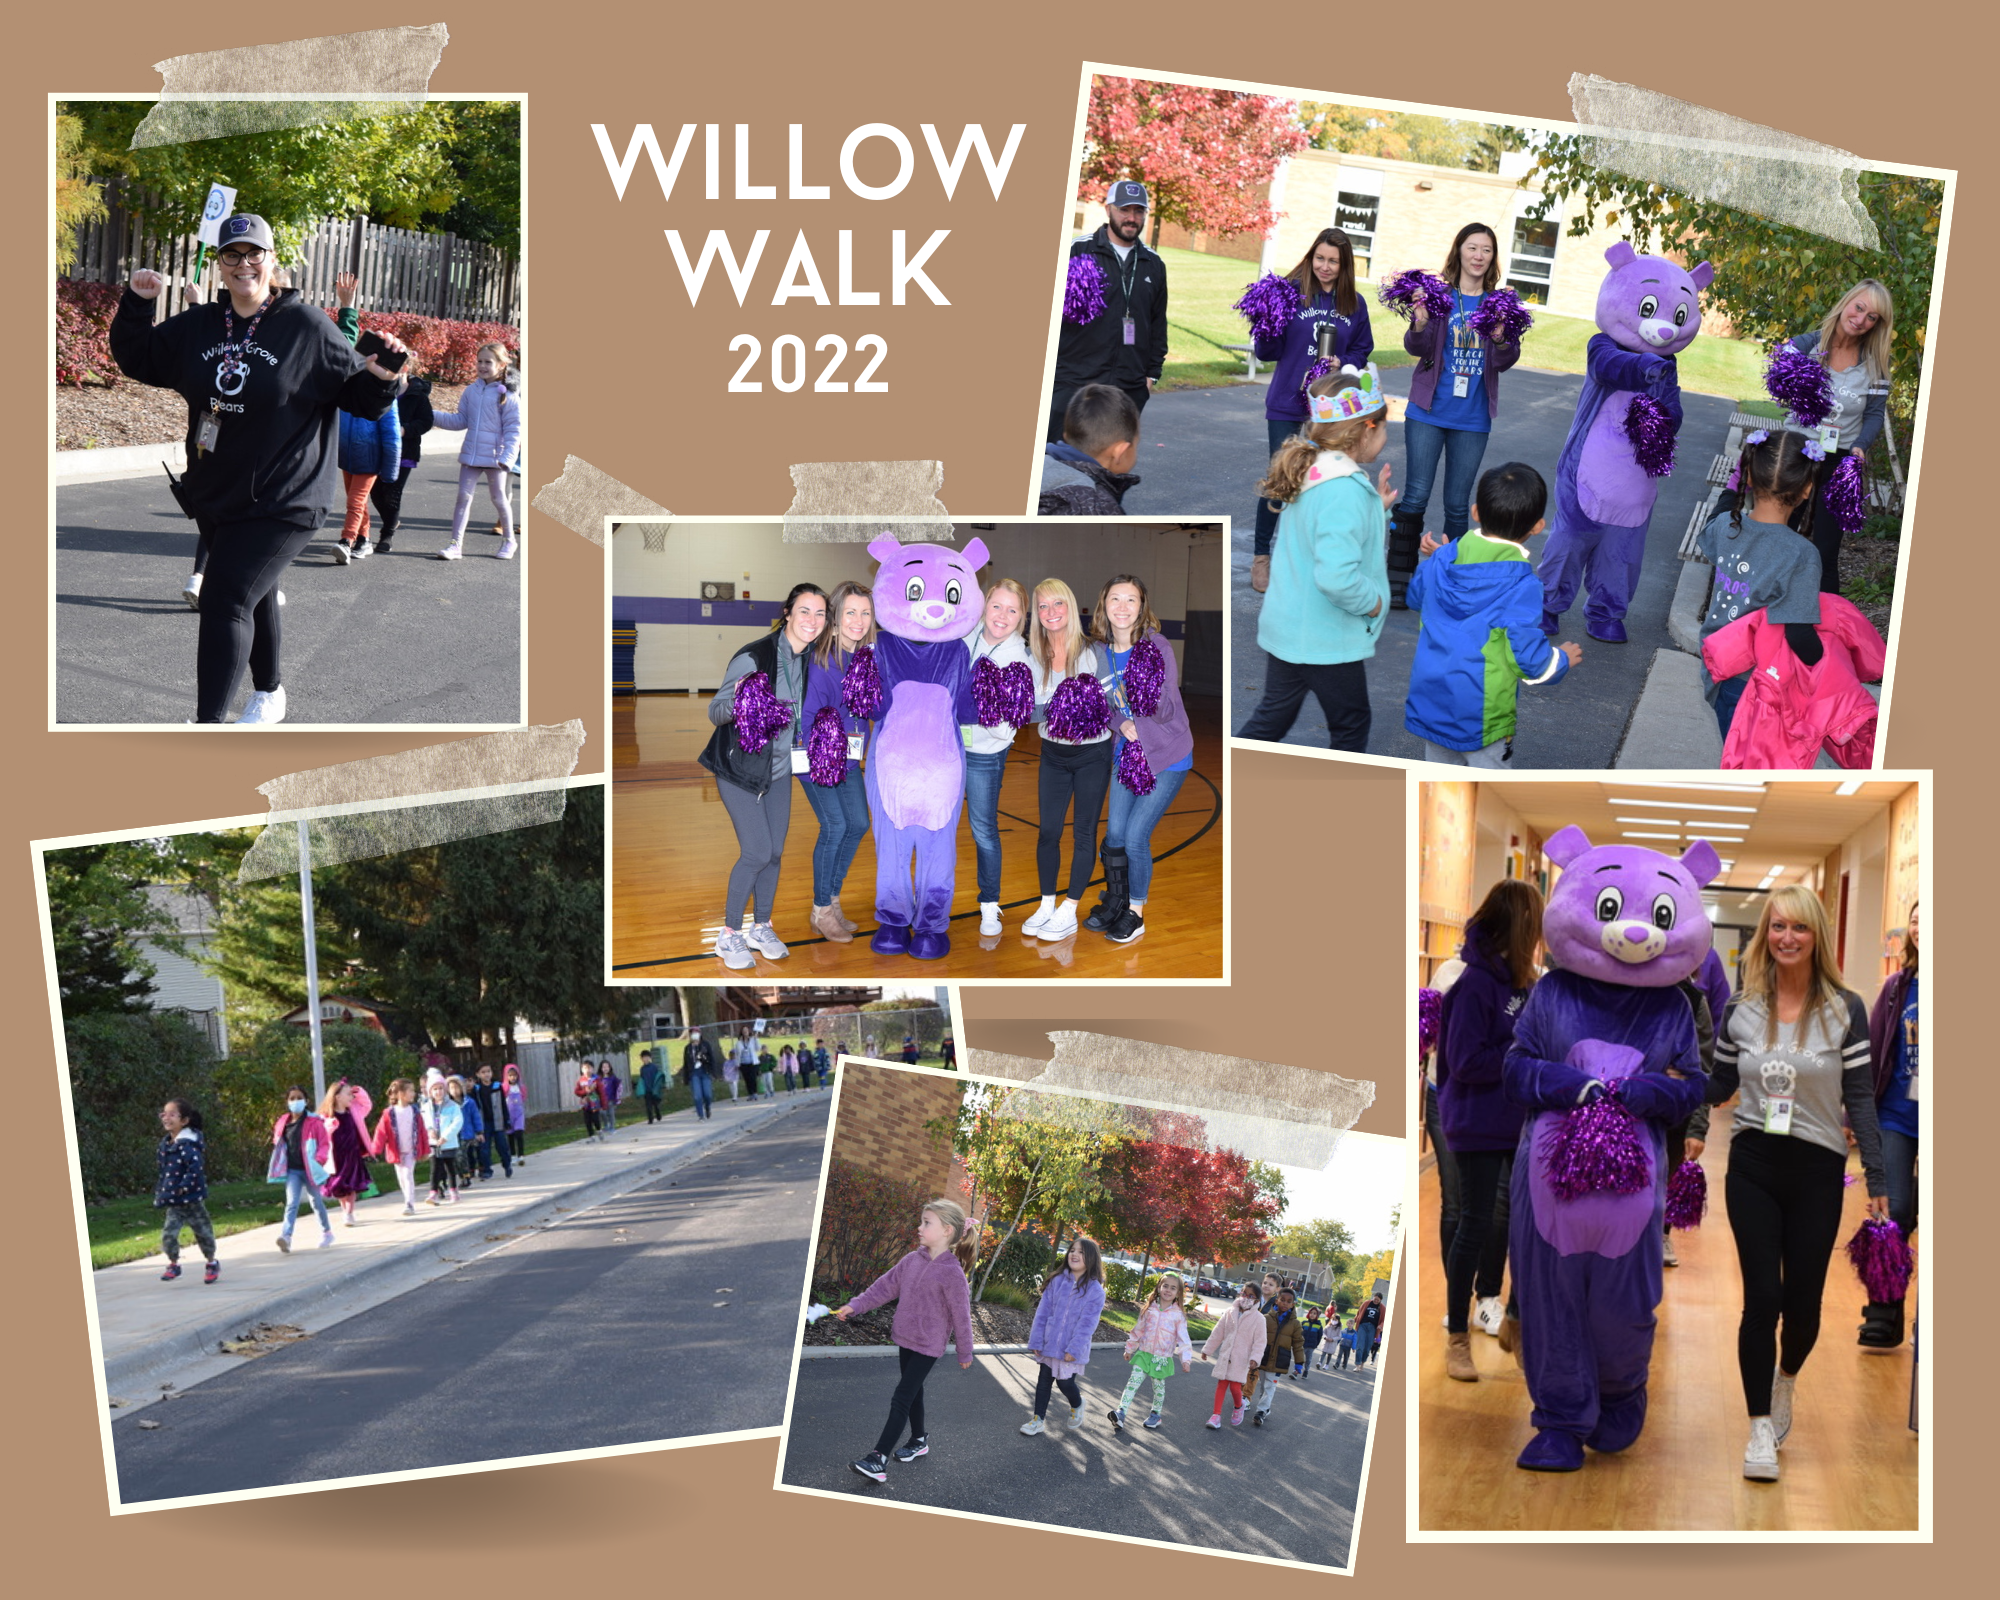 Willow Walk, October 14, 2022